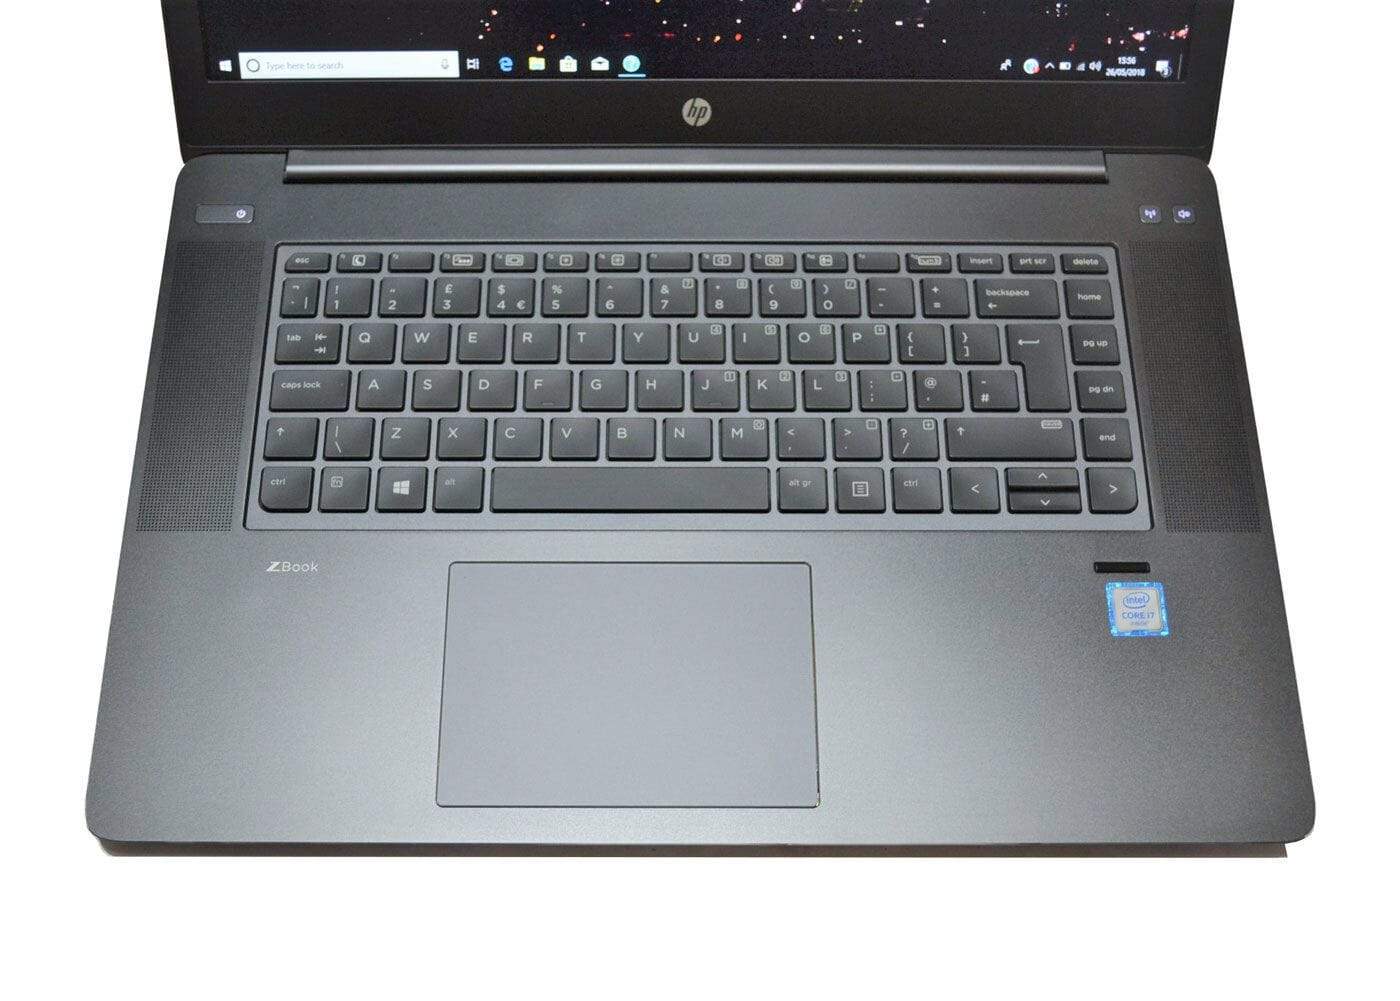 HP ZBook 15 Studio G3 Workstation: Core i7-6700HQ, Quadro, 2020 HP Warranty - CruiseTech